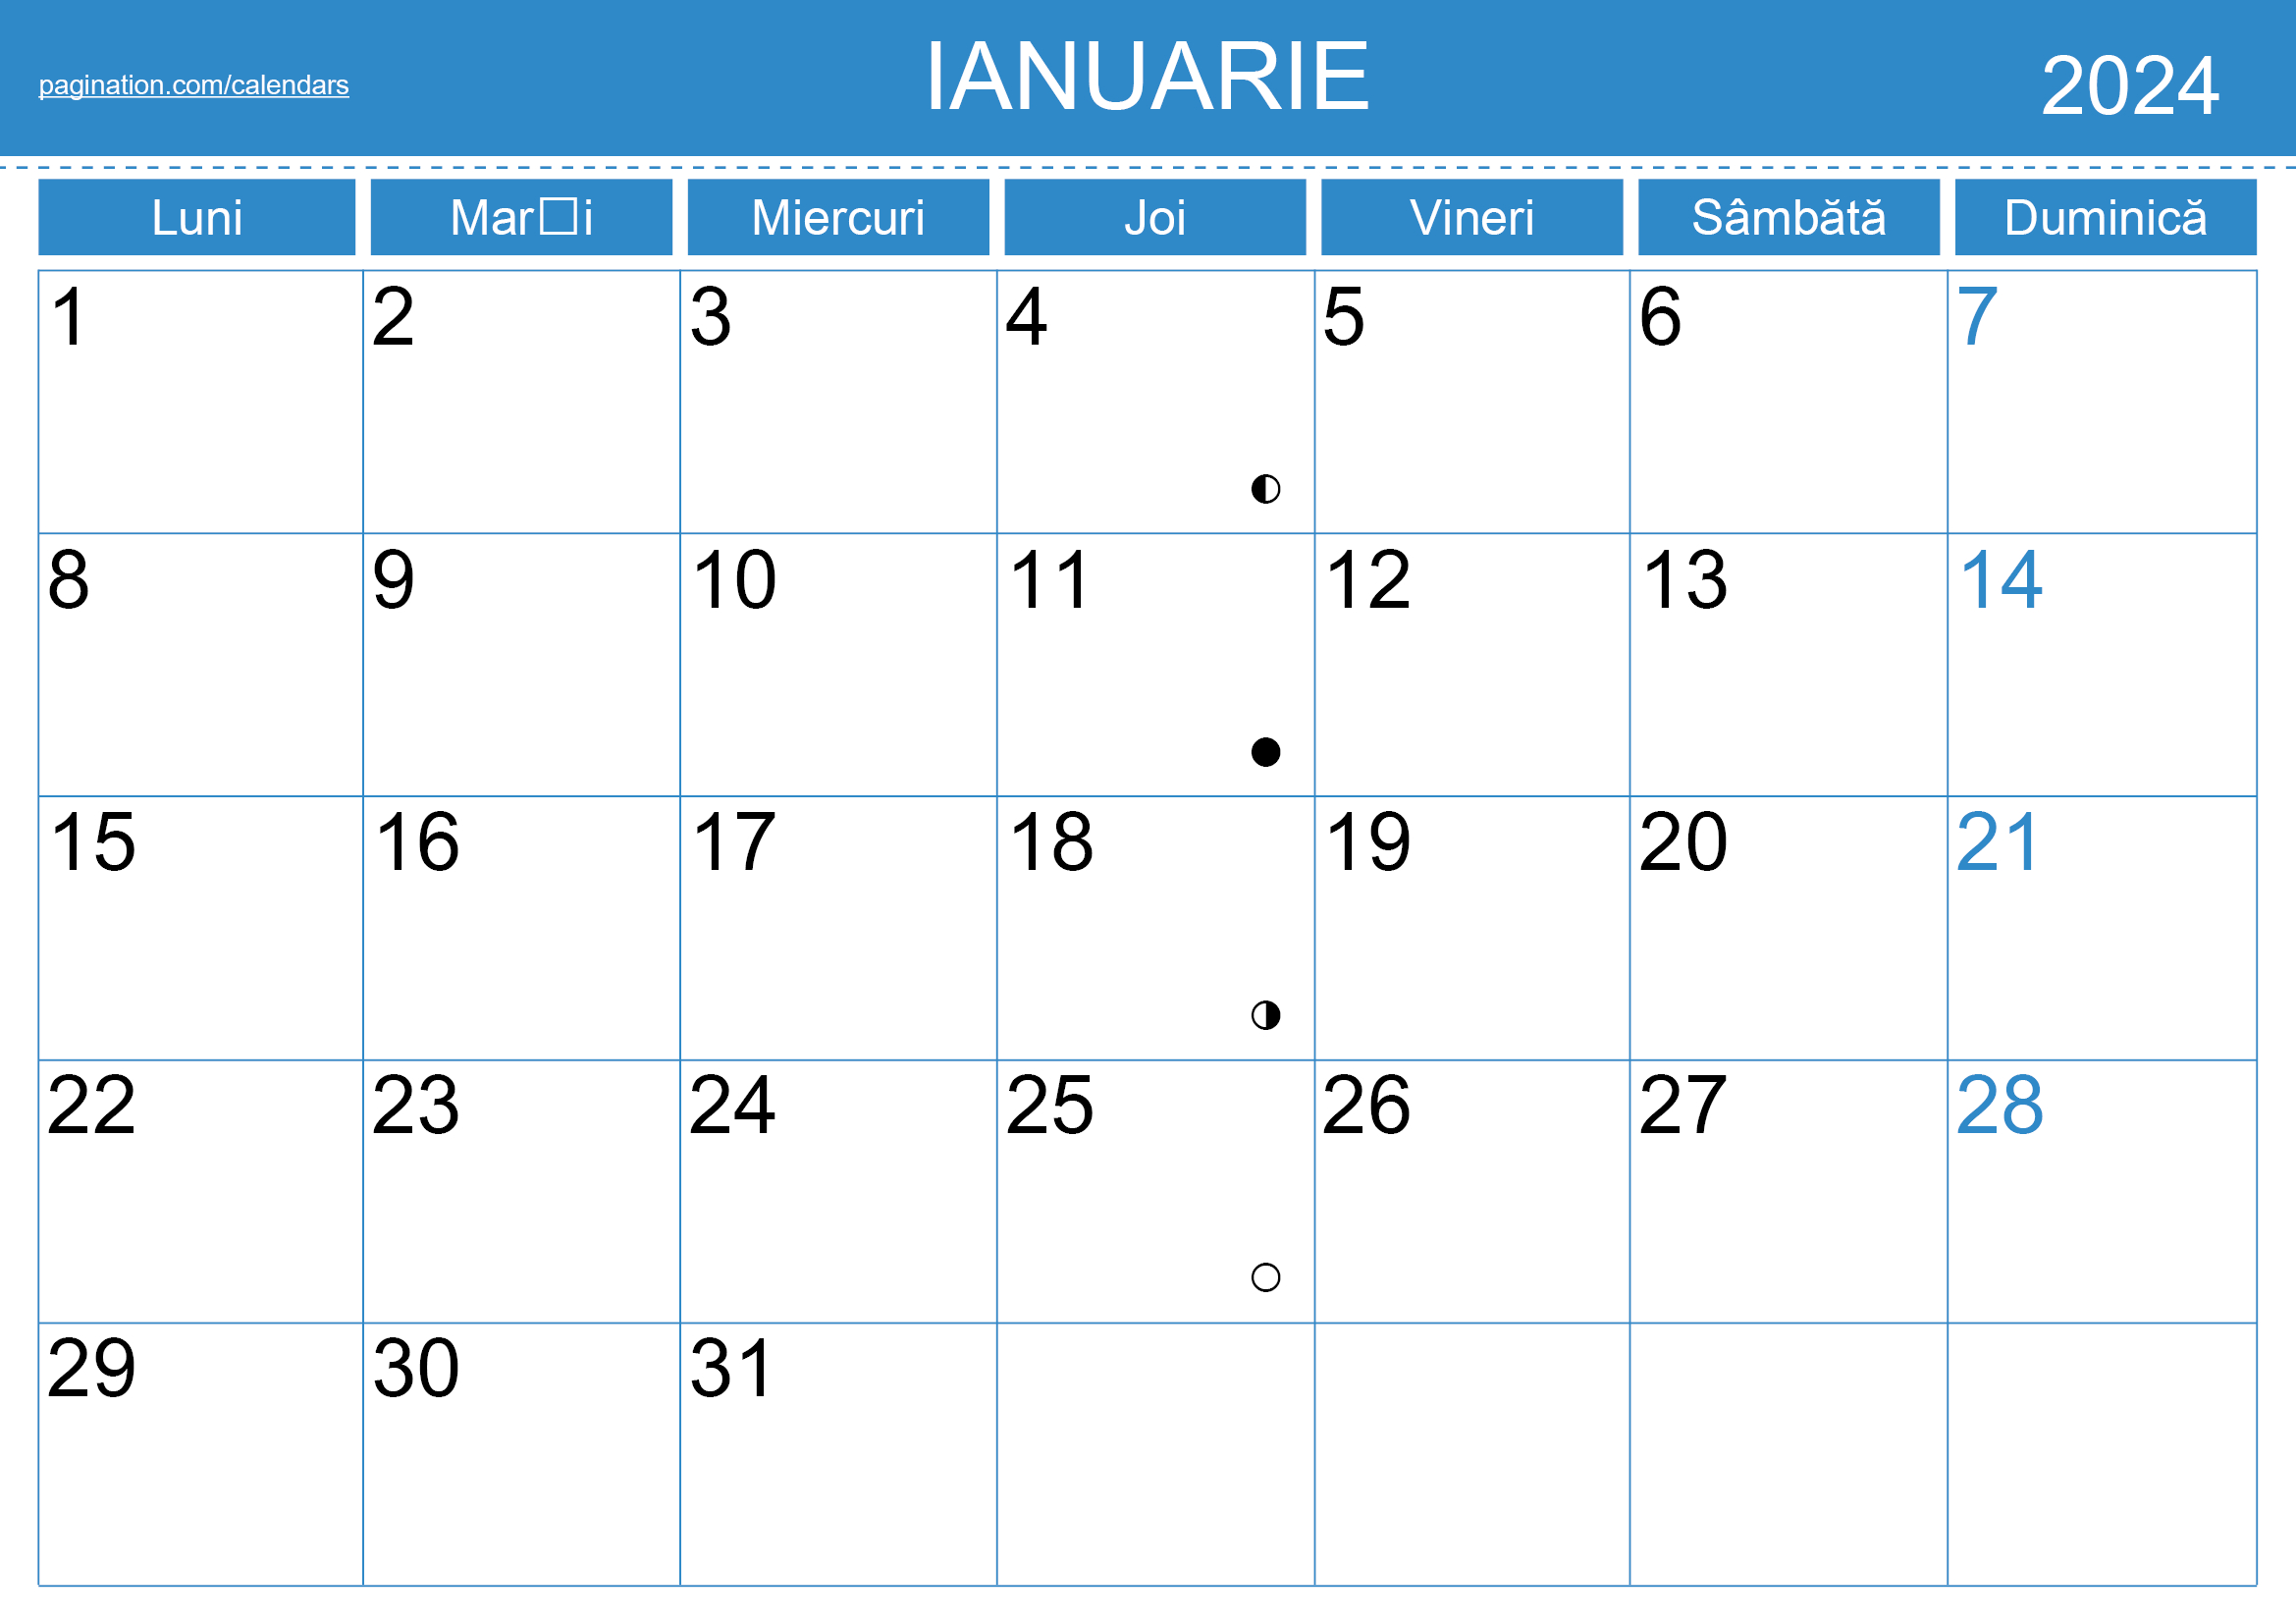 Calendar Indesign - Română (Romanian) - Pagination | Printable Calendar 2024 Romanesc Pdf